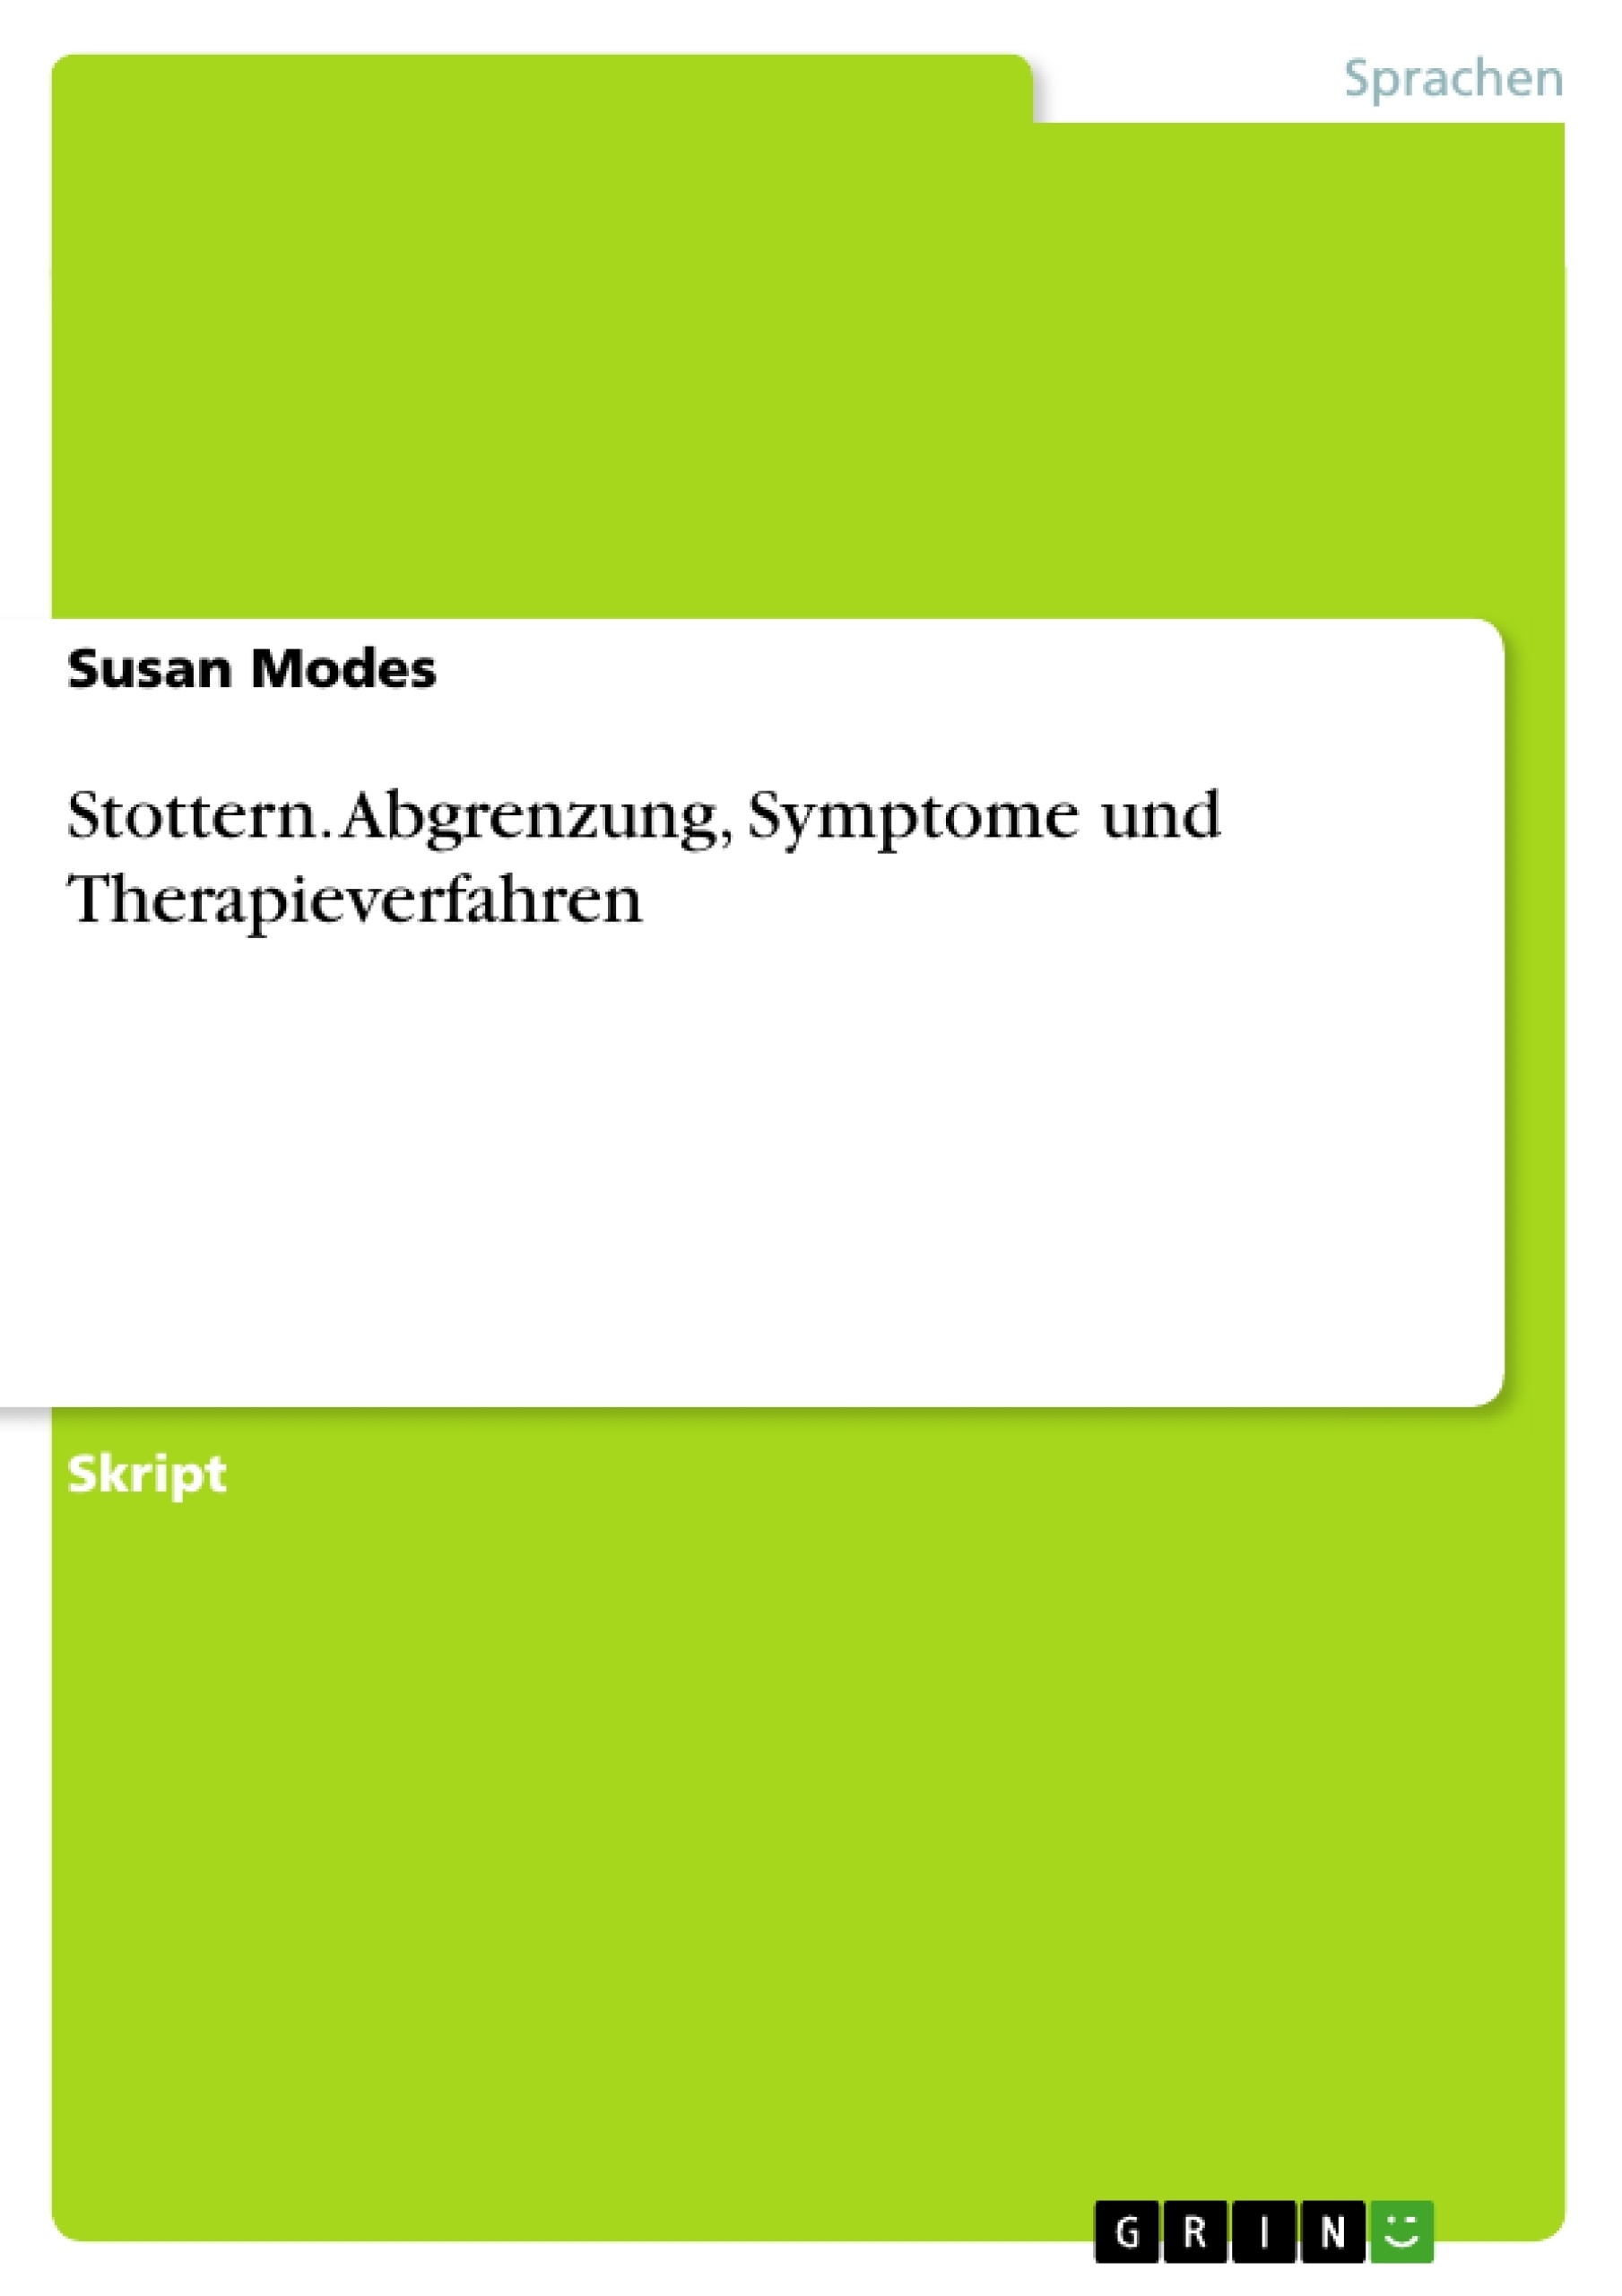 Title: Stottern. Abgrenzung, Symptome und Therapieverfahren